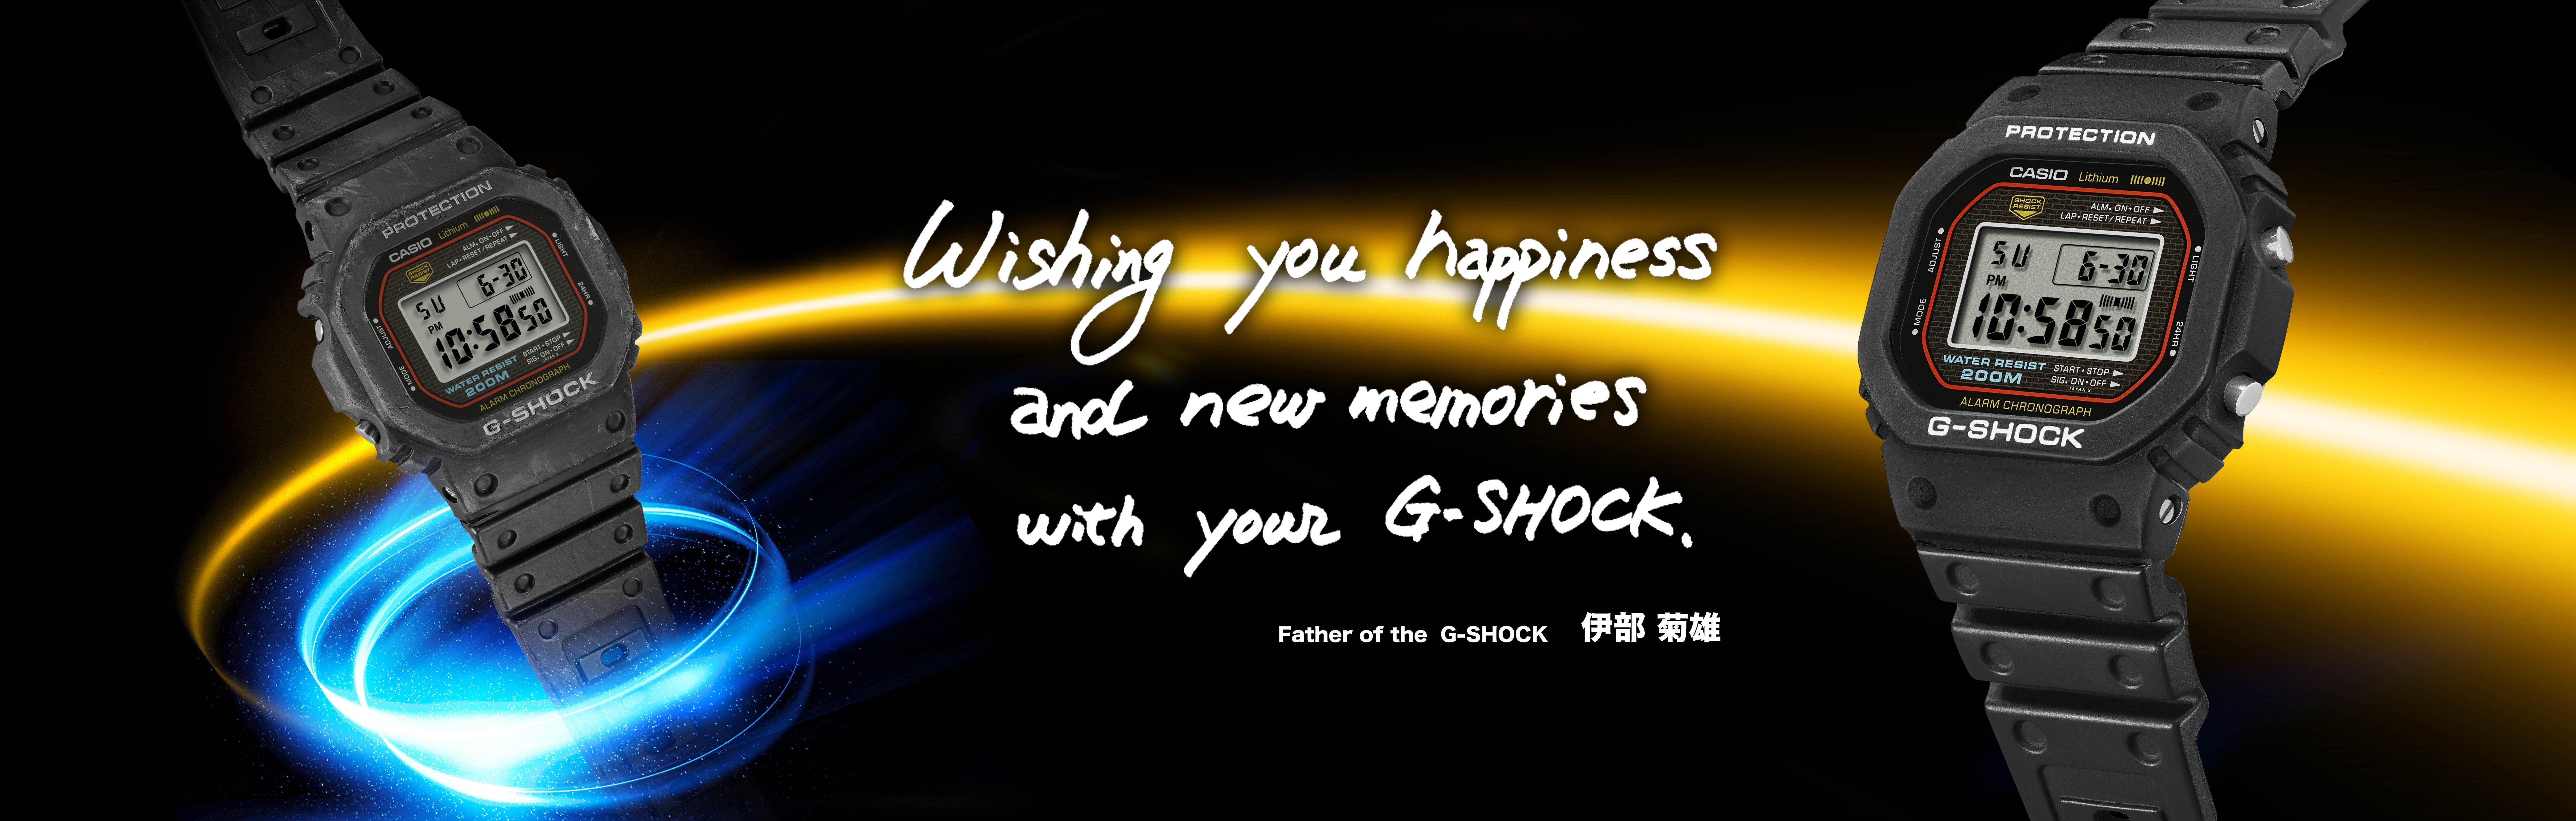 G-SHOCK CASIO DW-5600C レストア 済み